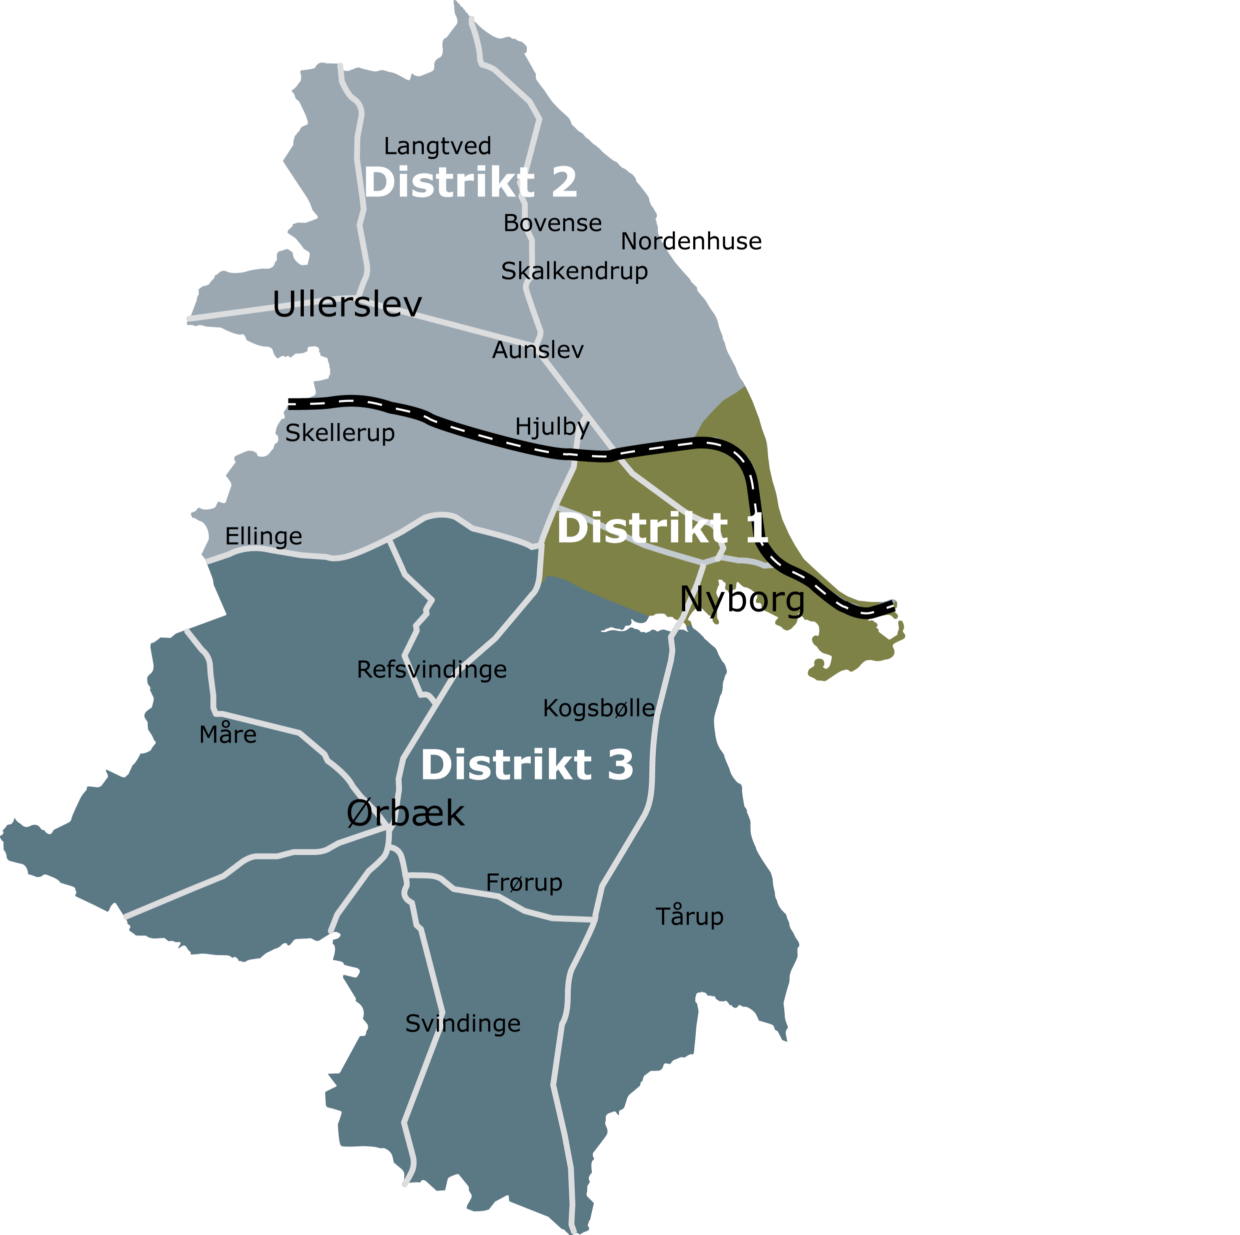 Distrikter optegnet i 3 REVIDERET 2016